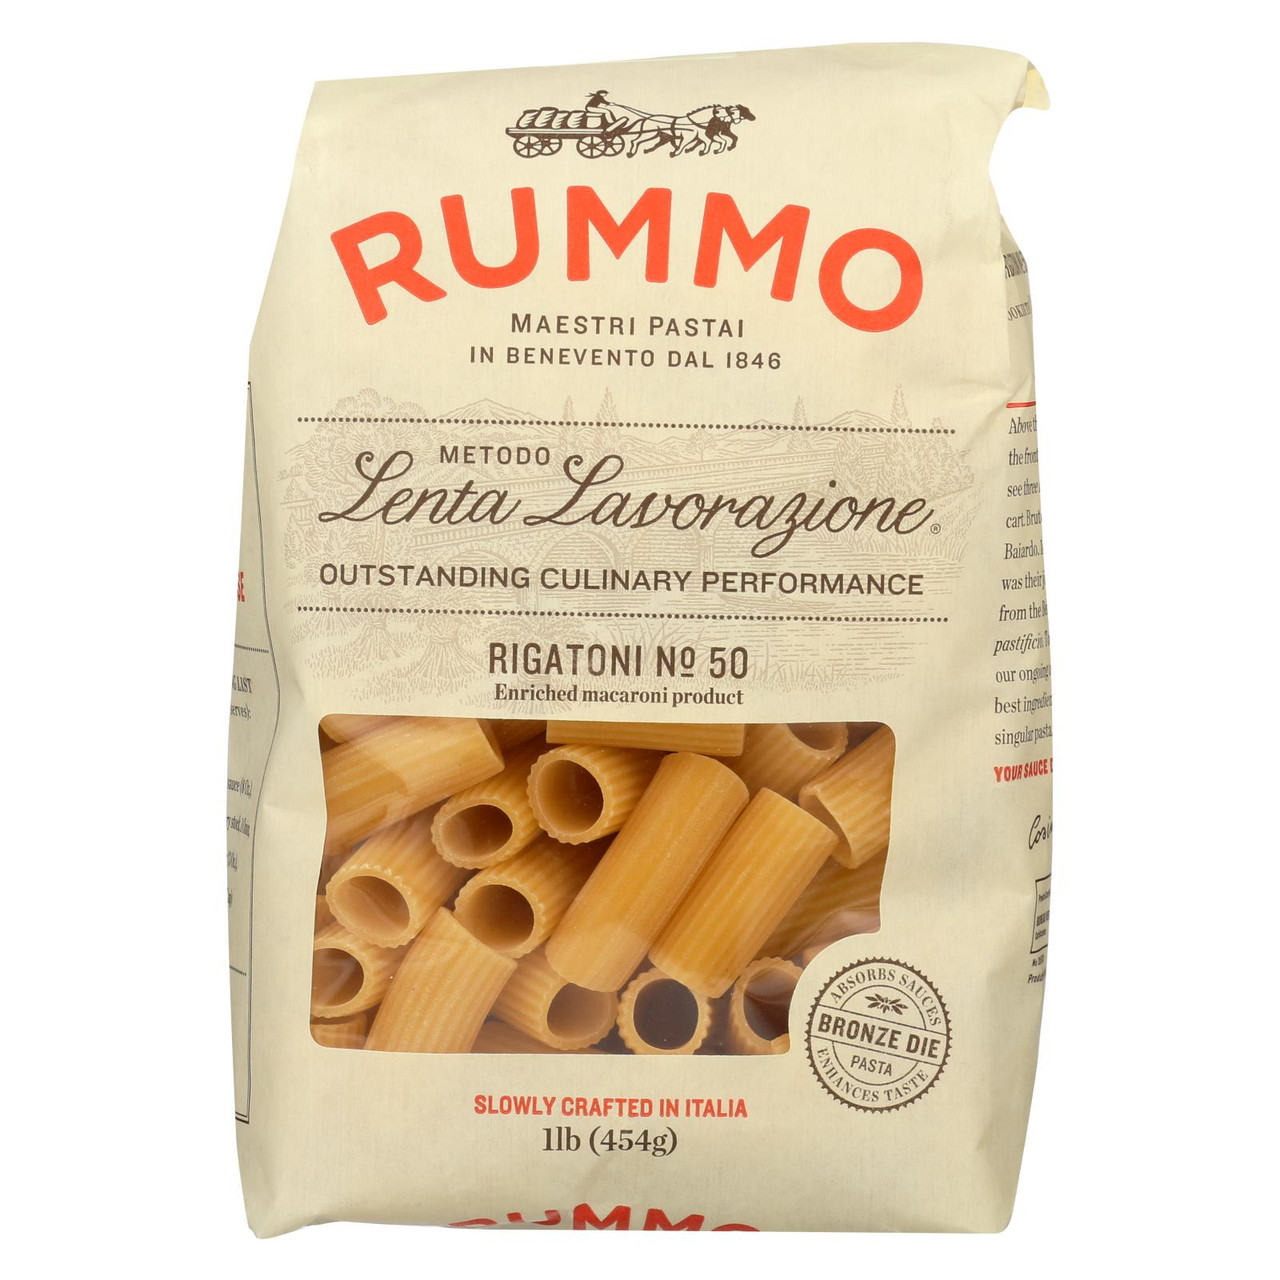 Sgambaro Italian Rigatoni Pasta for Sale - 1.1 lb